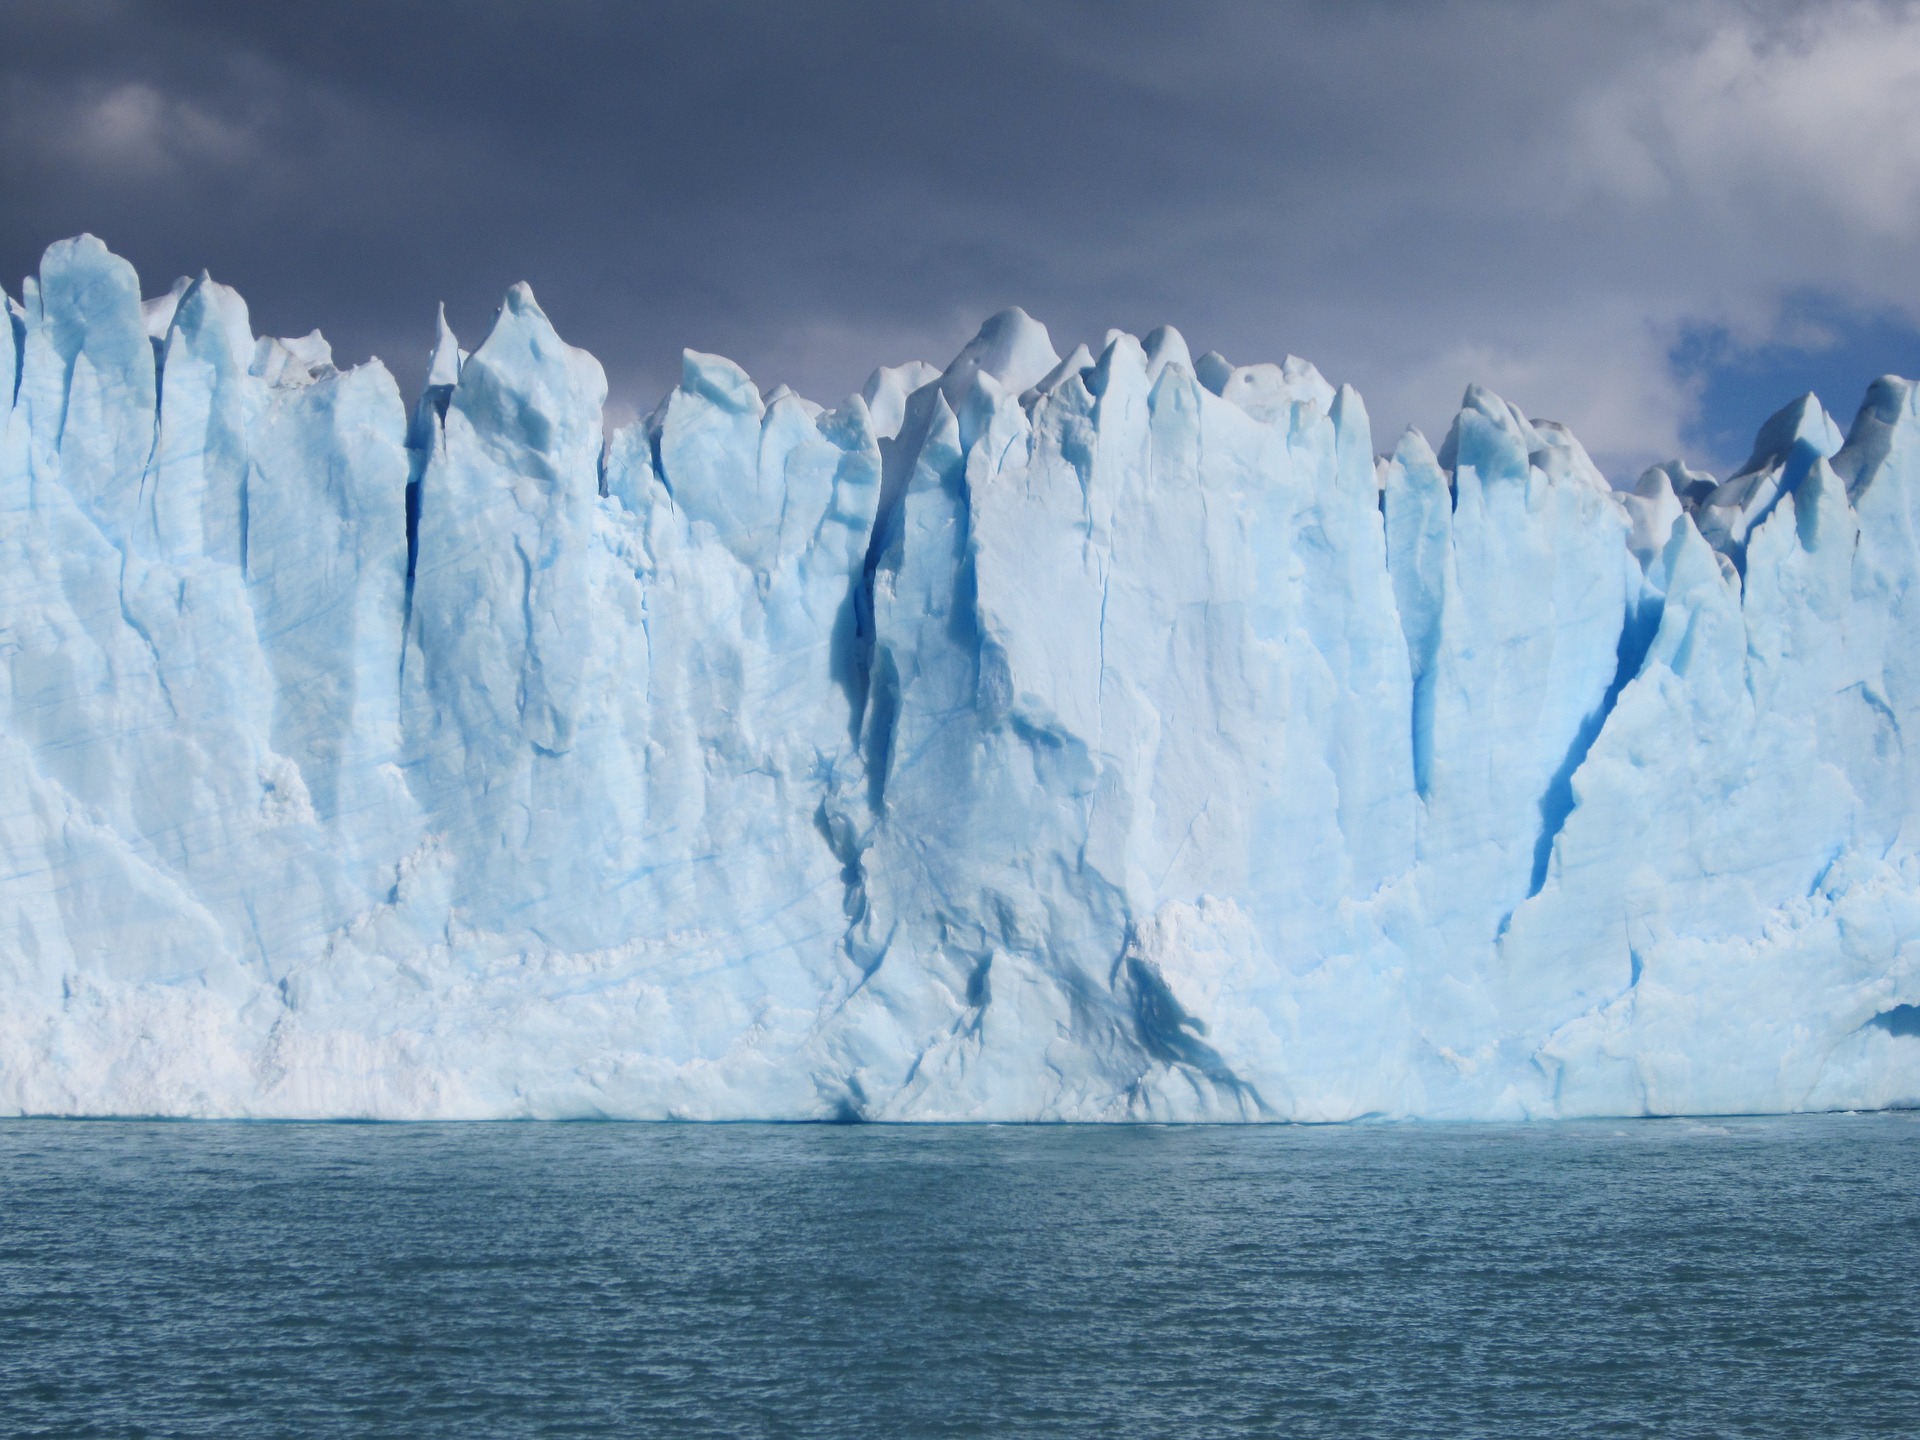 Glacier перевод. Антарктида Гренландия Арктика Северный Ледовитый океан. Ледник Ламберта Антарктида. Ледники айсберги Антарктиды. Покровные ледники Антарктиды.